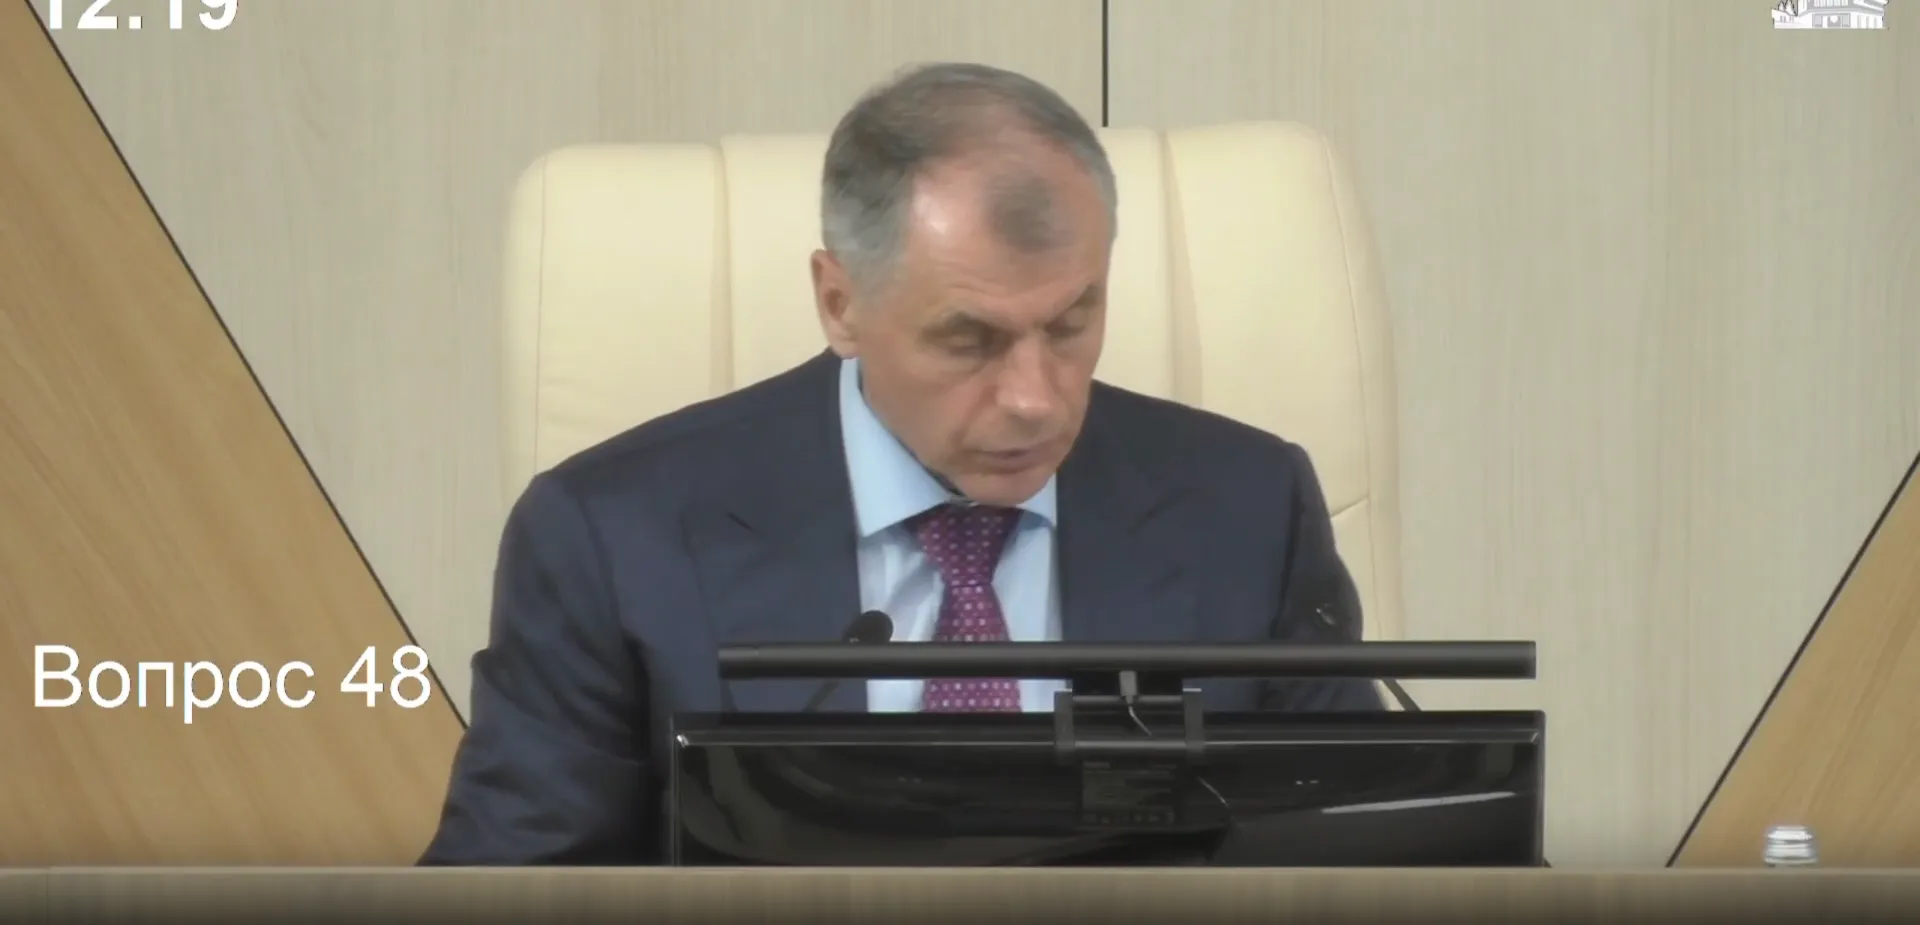 Откровенный разговор крымских депутатов попал в Сеть из-за забытого микрофона: "Мы пашем!"